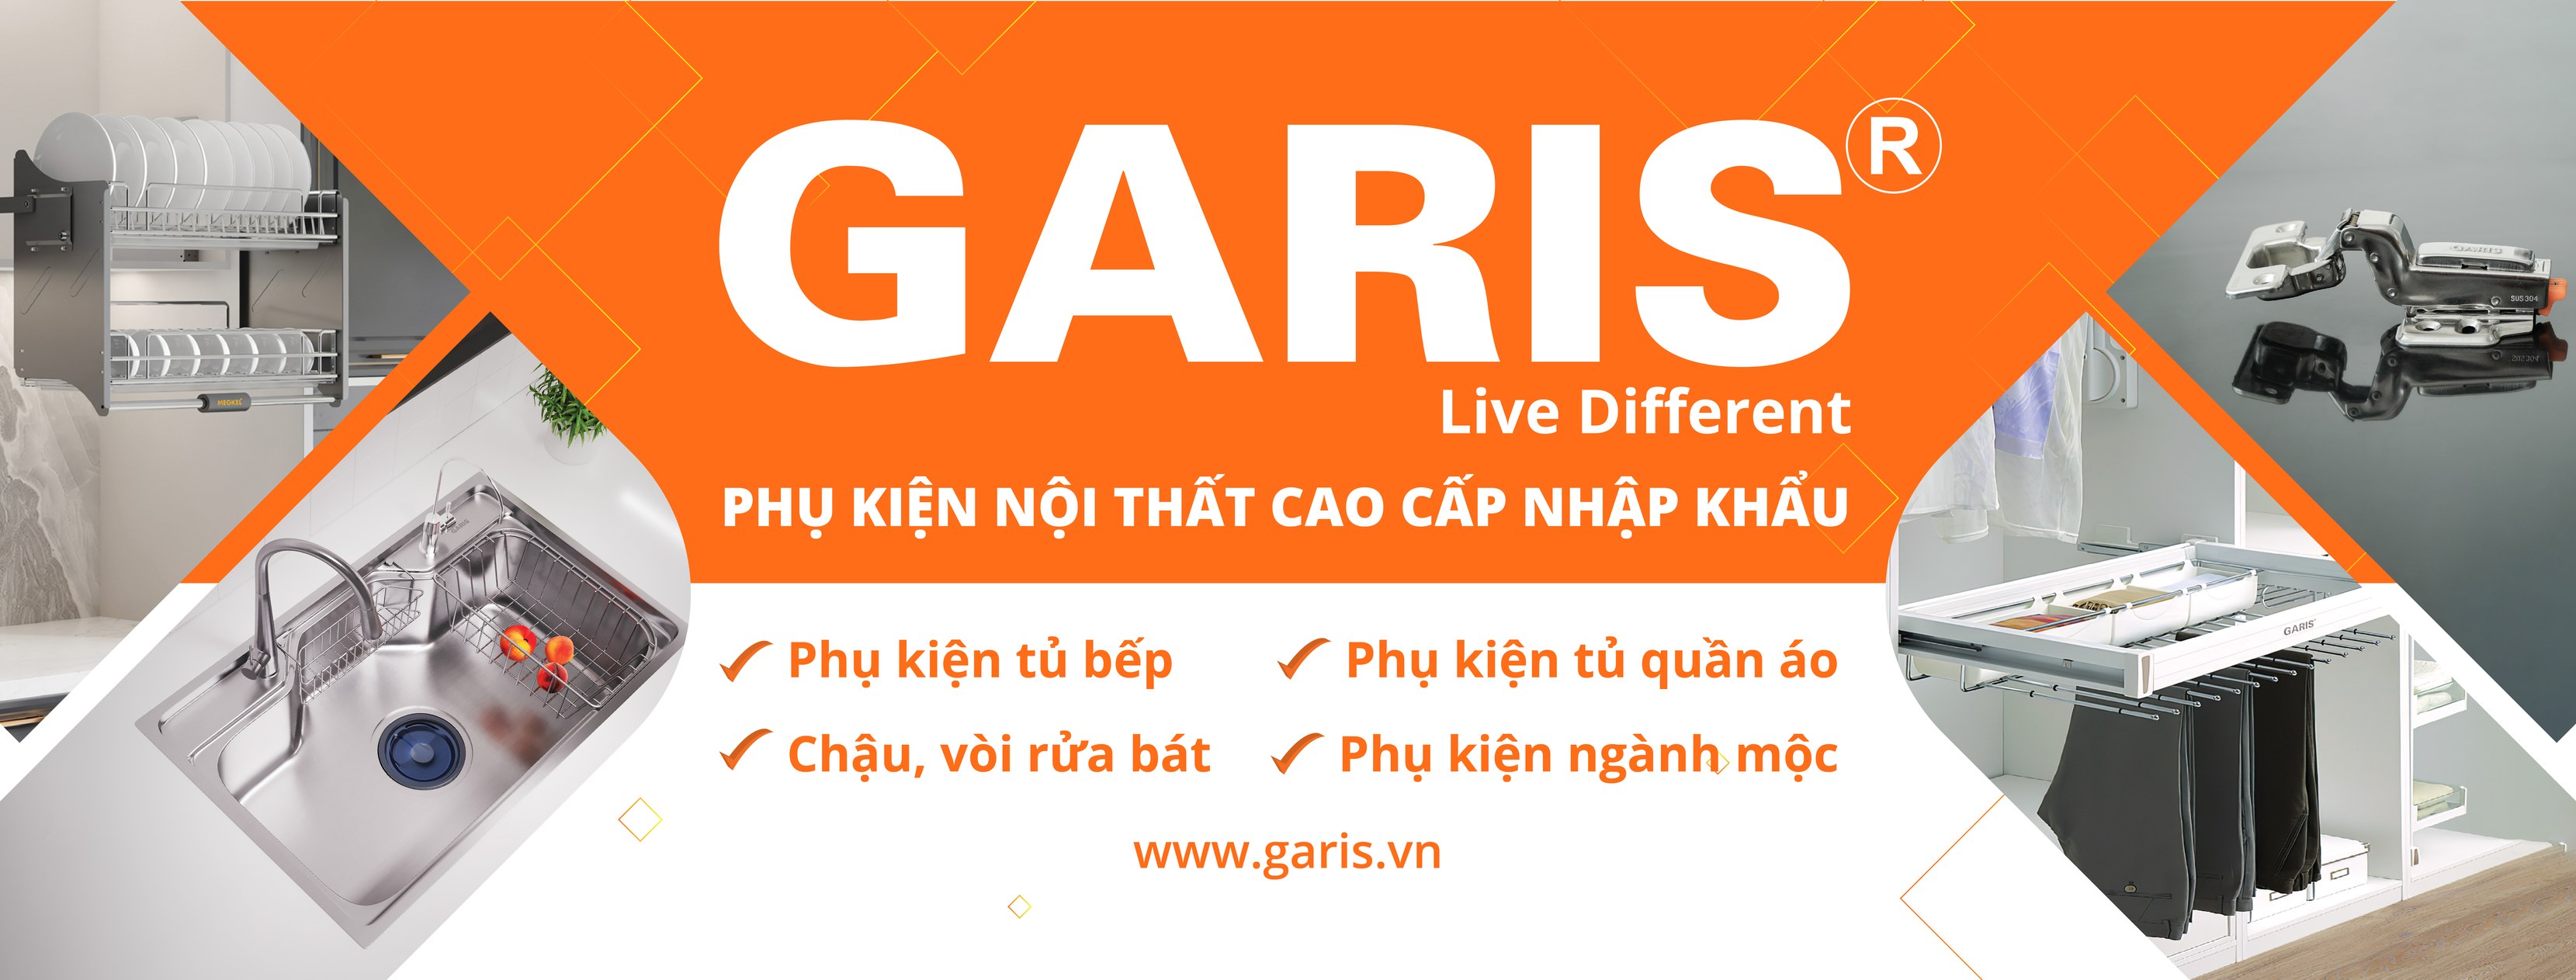 Chính sách bảo hành sản phẩm Garis